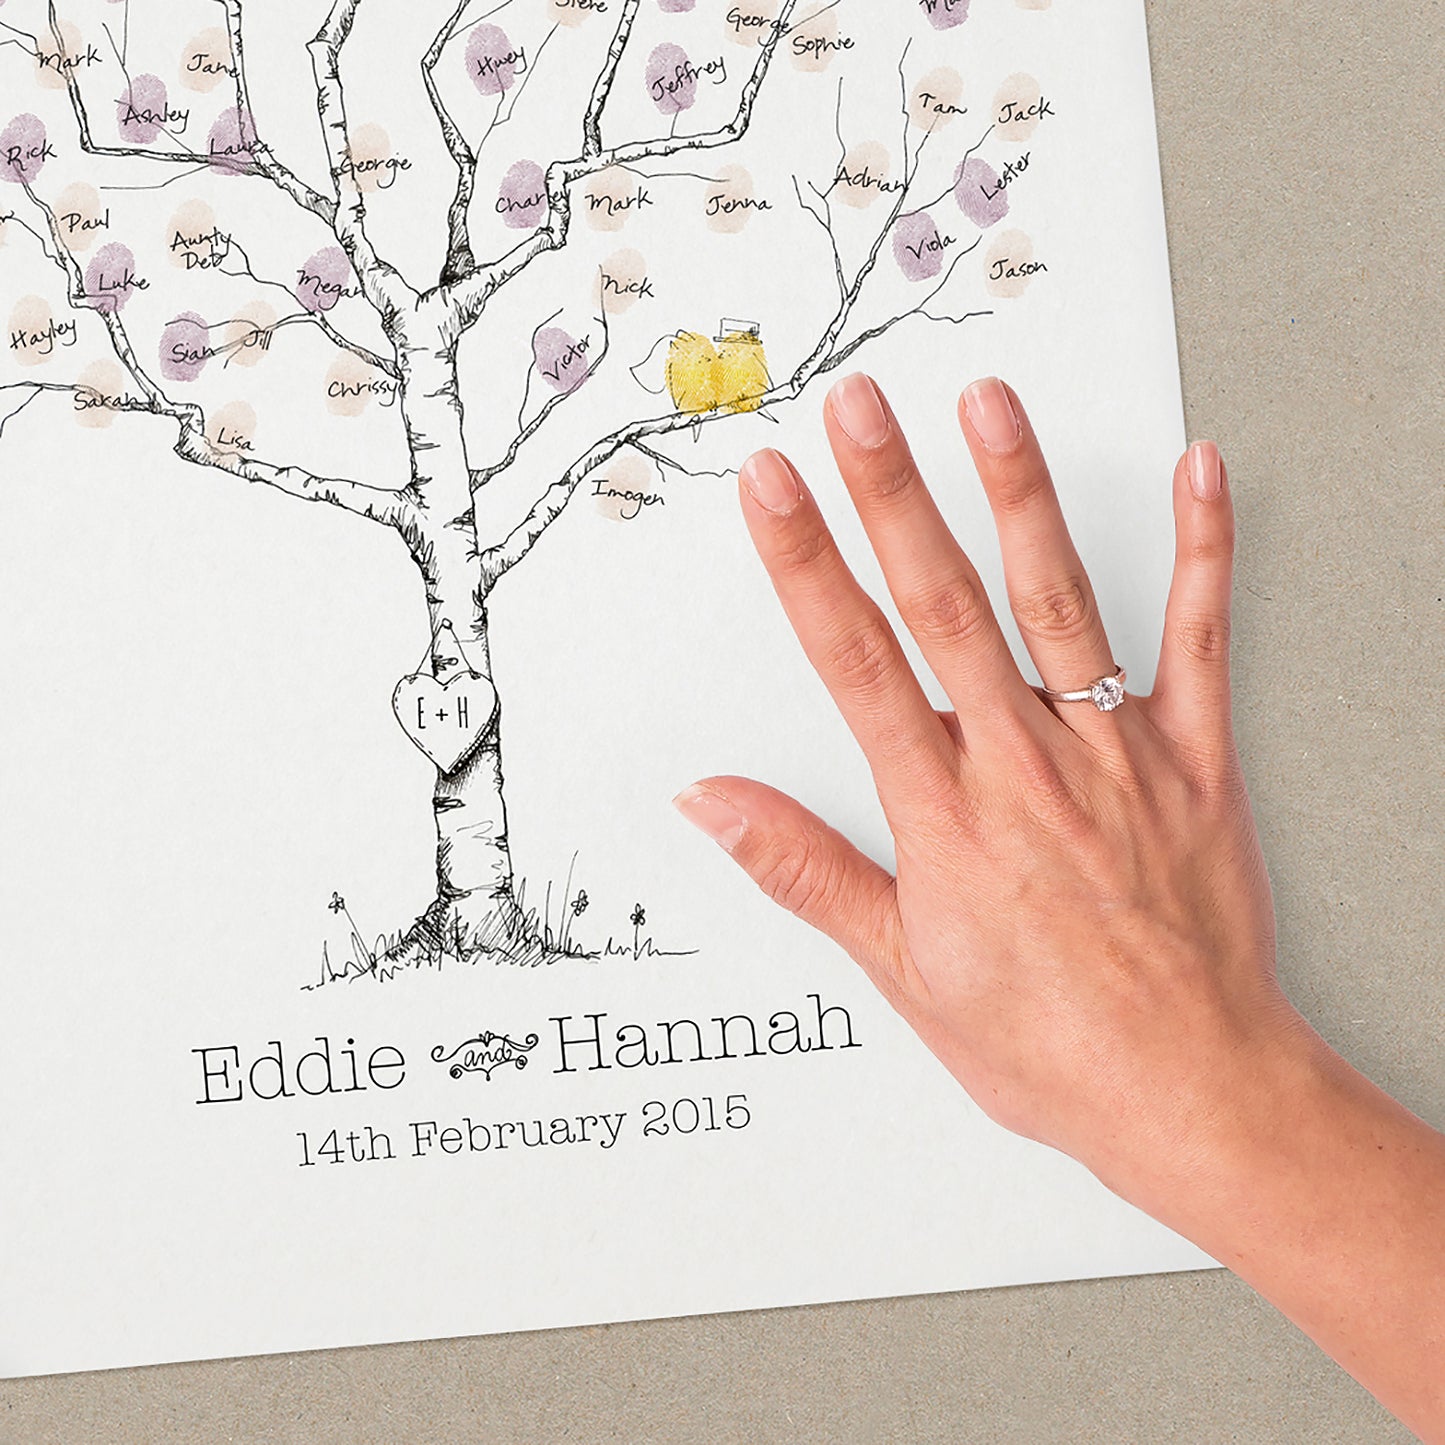 Birch Wedding Fingerprint Tree Guestbook